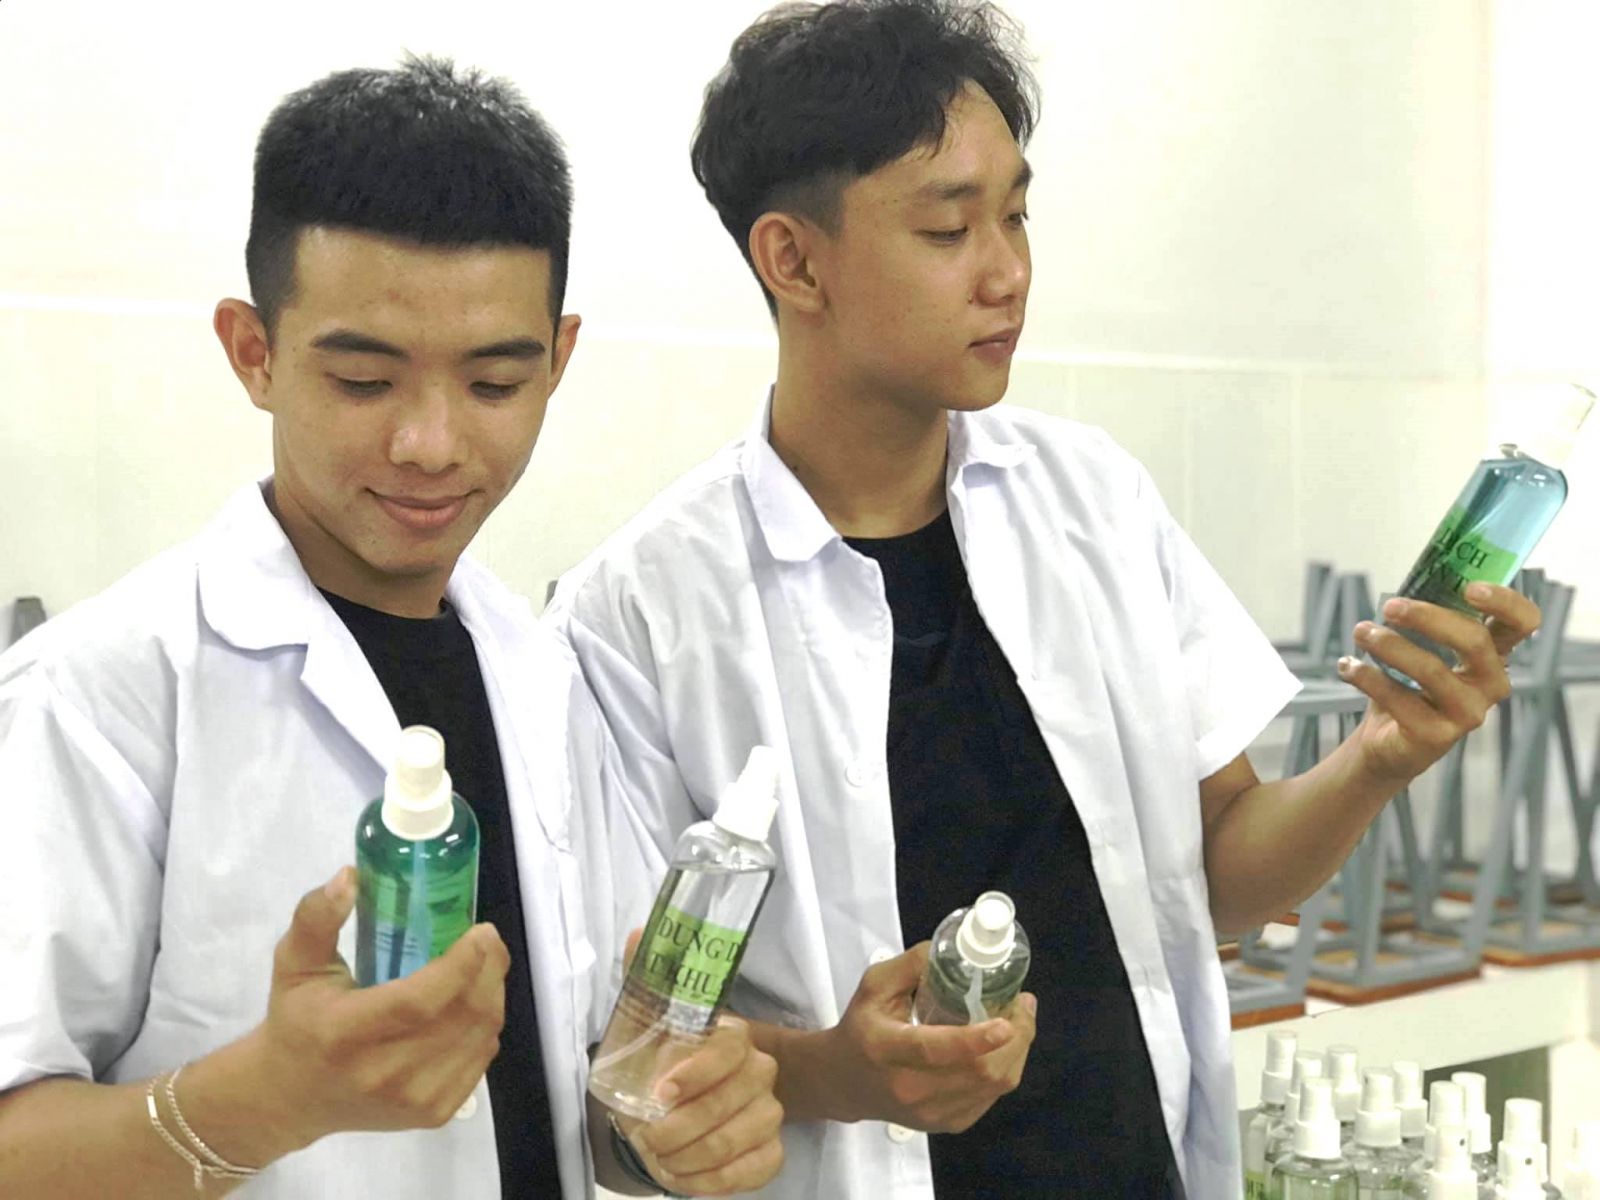 Dung dịch sát khuẩn tay chế tạo ra sẽ được Đoàn trường THPT Nguyễn Đình Chiểu phát miễn phí cho học sinh, cán bộ, giáo viên và nhân viên của trường